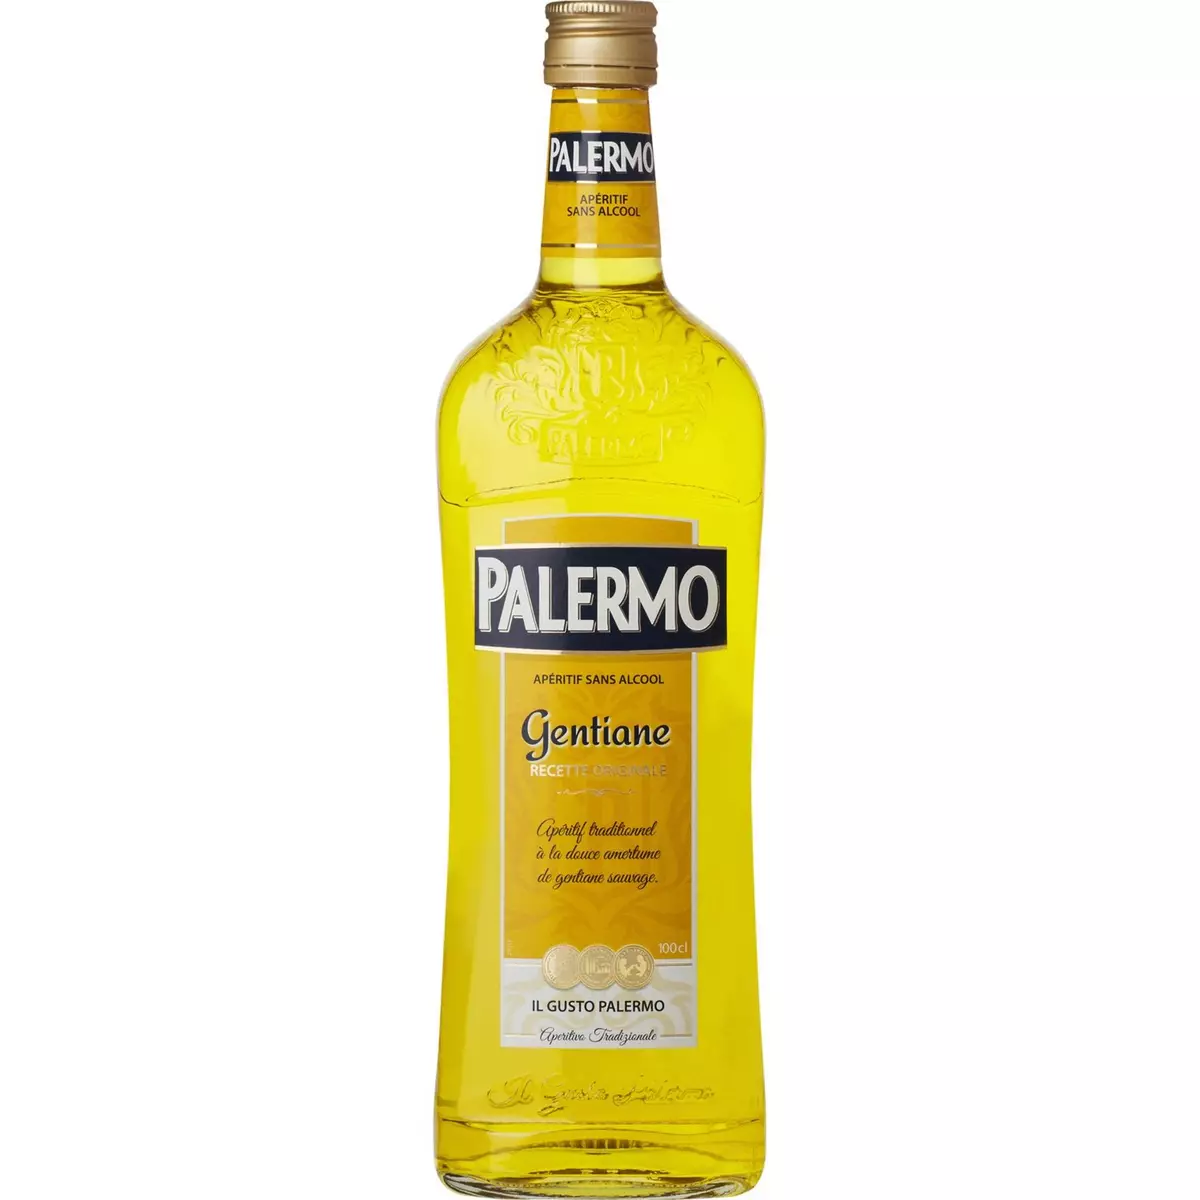 PALERMO Depuis plus de 30 ans, Palermo propose une gamme de 4 apéritifs sans alcool distinctifs et de caractère, en utilisant son expertise unique et traditionnelle.